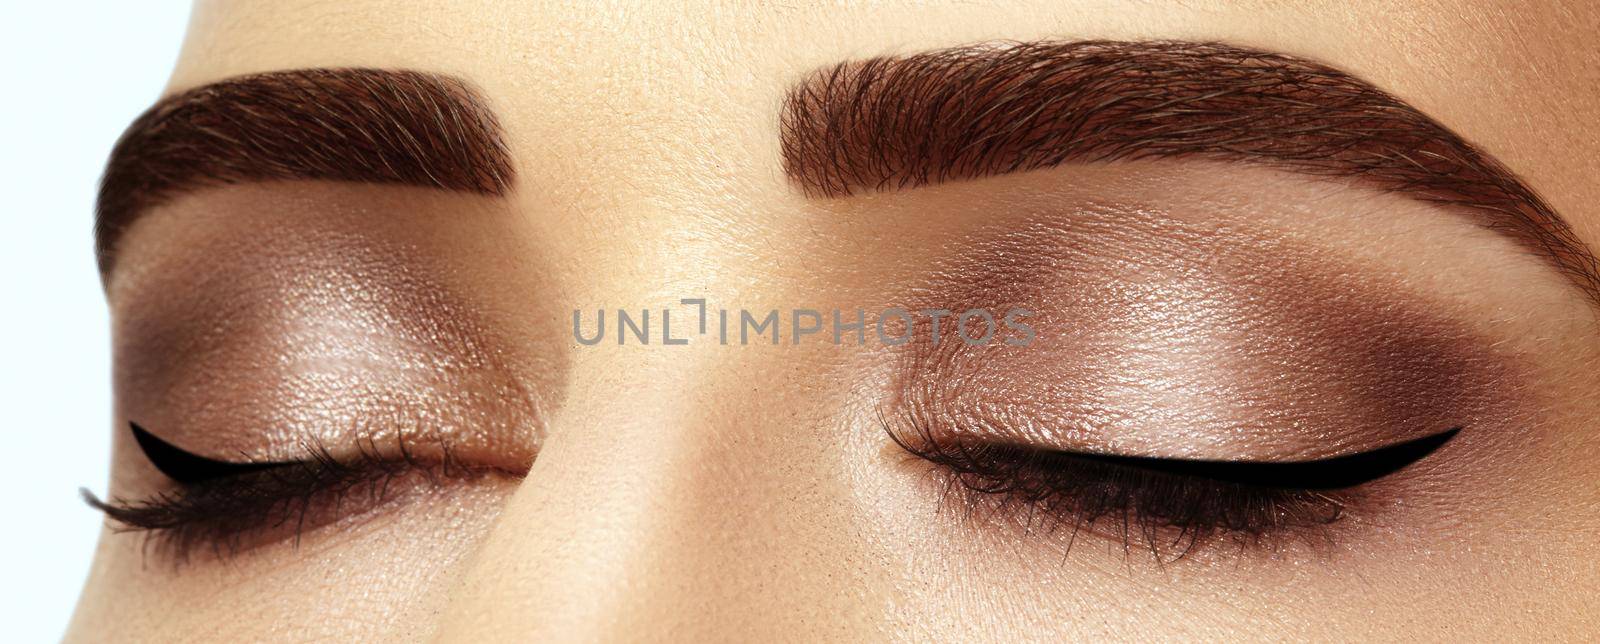 Perfect shape of eyebrows, brown eyeshadows and long eyelashes. Closeup macro shot of fashion smoky eyes visage by MarinaFrost